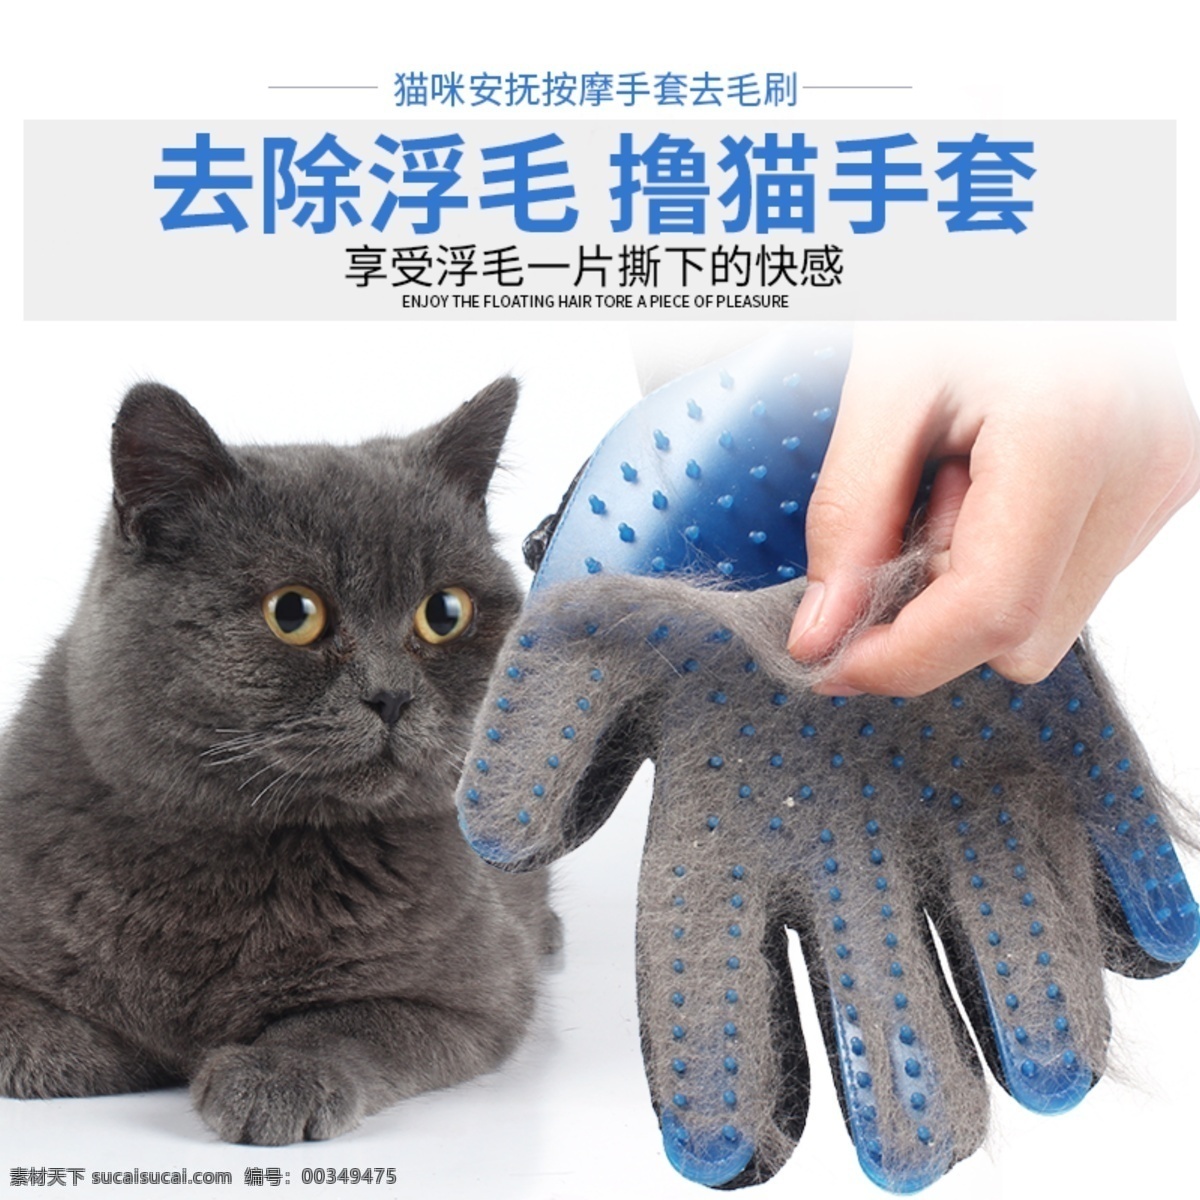 撸猫手套主图 猫咪 手套 猫梳子 蓝猫 撸猫手套 淘宝天猫主图 分层